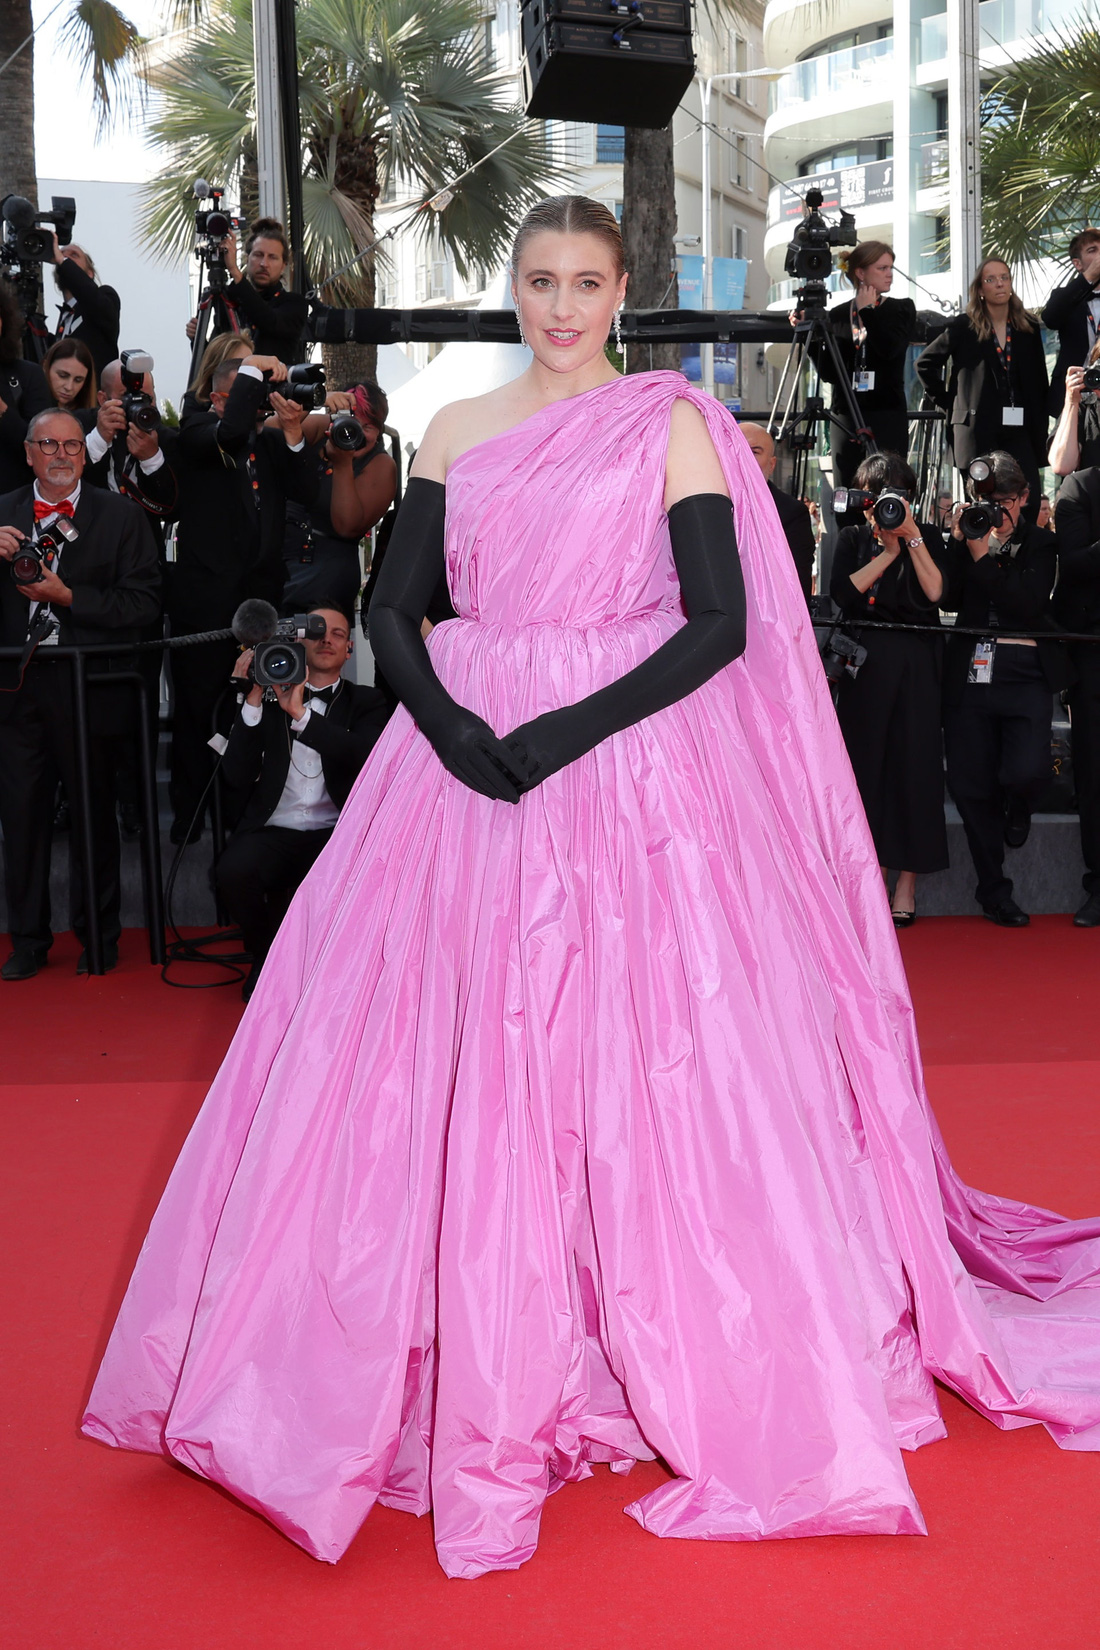 Giám khảo Greta Gerwig nổi bật với chiếc đầm hồng, hệt như búp bê Barbie - Ảnh: Getty